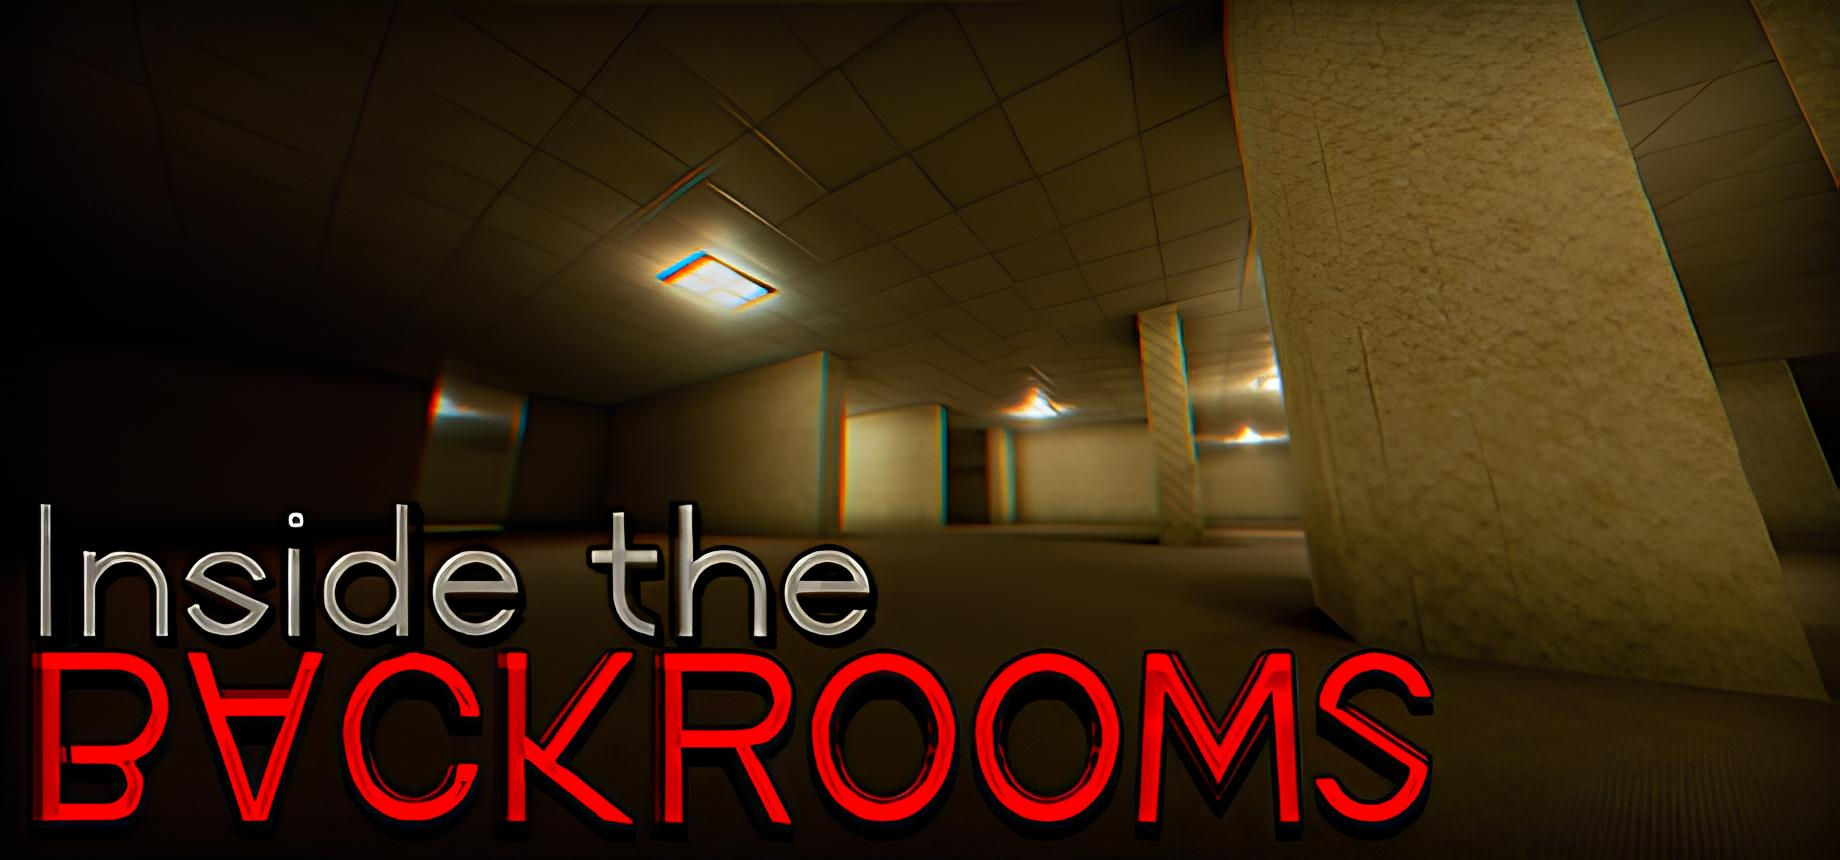 Обложка игры Inside the Backrooms